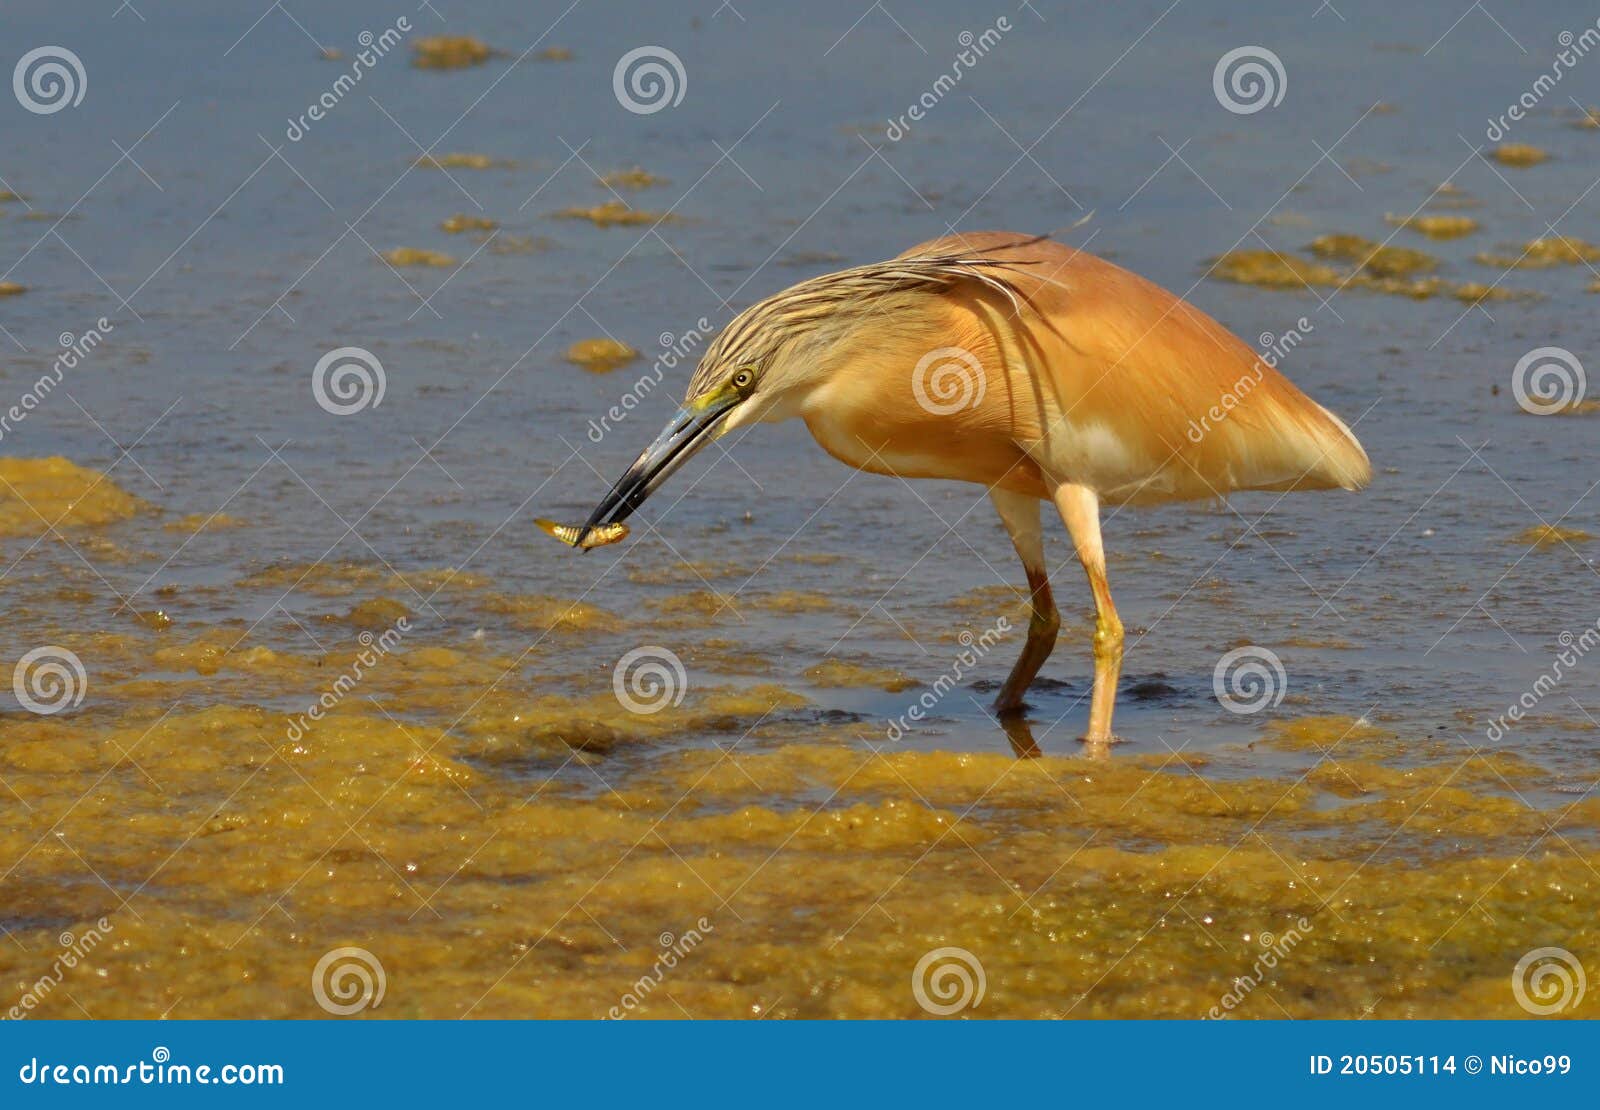 Red heron stock photo. Image of aquatics, ethology, ornithology - 20505114